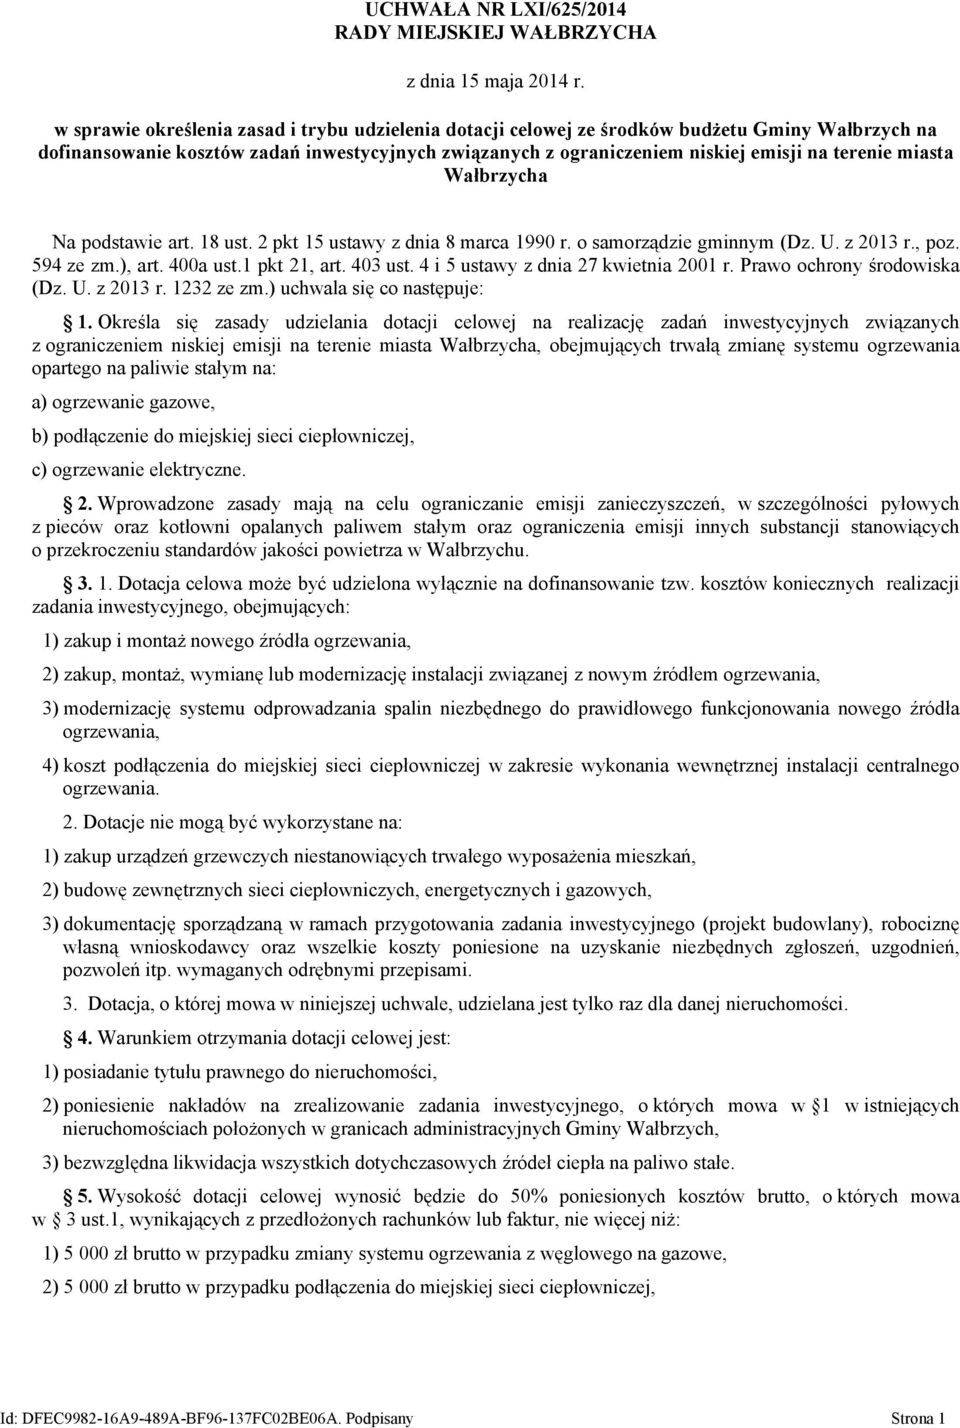 miasta Wałbrzycha Na podstawie art. 18 ust. 2 pkt 15 ustawy z dnia 8 marca 1990 r. o samorządzie gminnym (Dz. U. z 2013 r., poz. 594 ze zm.), art. 400a ust.1 pkt 21, art. 403 ust.